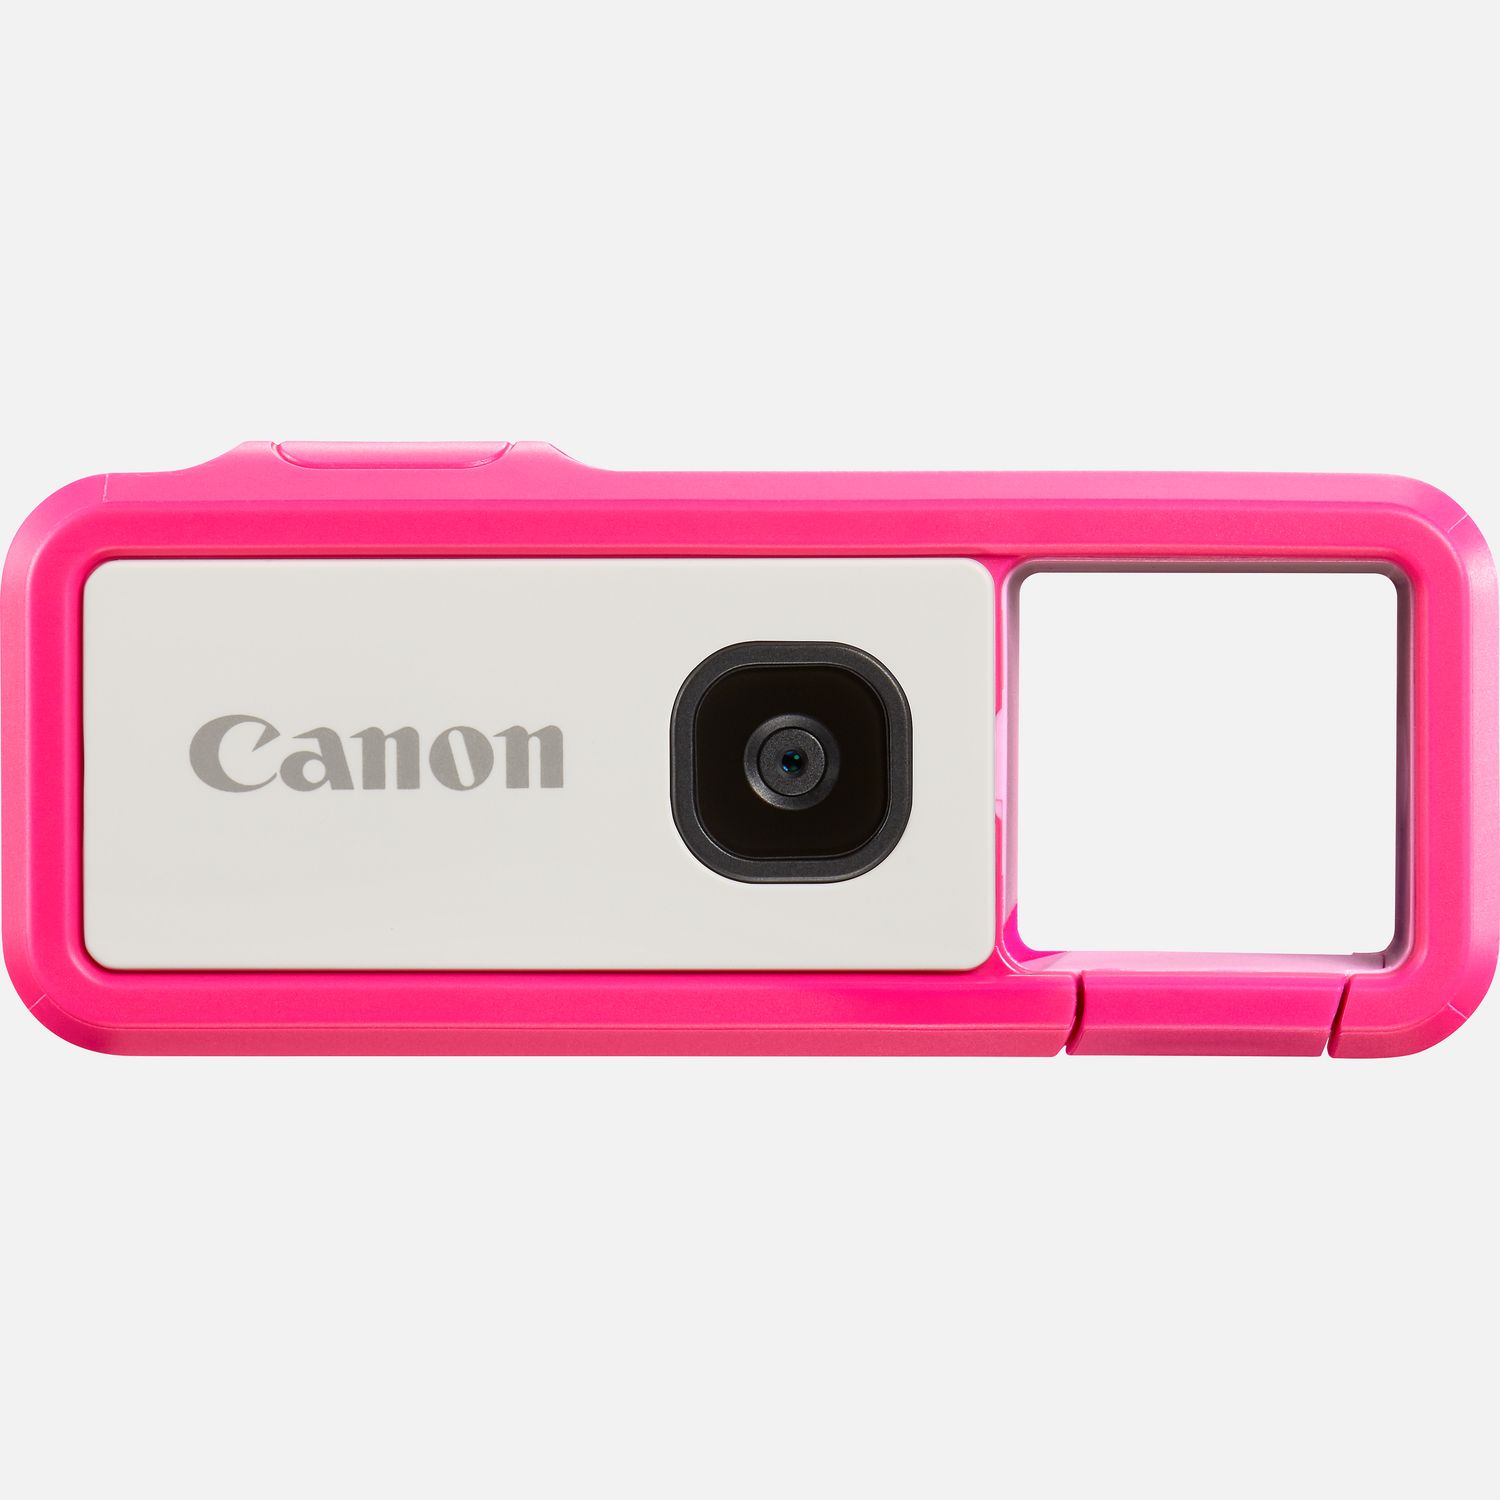 Mit der Canon IVY REC, die speziell fr deinen Outdoor-Spa entwickelt wurde, kannst du alle deine Abenteuer festhalten. Diese Kamera ohne Display ist wasserdicht*, stofest**, kabellos verbunden und tragbar  zudem ist sie zuverlssig und macht viel Spa! Und da sie kein Display hat, kann auch nichts kaputt gehen, damit du dich auf das konzentrieren kannst, was zhlt: deinen Spa. Wenn du fertig mit dem Aufnehmen bist, kannst du die Bilder und Videos ber die Canon Mini Cam App ganz einfach auf dein Smartphone bertragen. Sie ist in vier Trendfarben erhltlich  Blau, Pink, Grn und Grau , so dass die Canon IVY REC perfekt zu deinem Lifestyle passt.  Vorteile      Mit der Canon IVY REC kannst du berall fotografieren und filmen. Das stofeste** und wasserdichte* Design macht sie ideal zum Fotografieren und Filmen unterwegs. Einfach am Wahlrad drehen und schon kannst du Fotos oder Videos aufnehmen          Die Canon IVY REC ist stofest** und hlt einiges aus. Zudem nimmt sie ca. 1.000 Fotos oder 60 Minuten an 1.080p 60 B/s Videos mit nur einer Ladung des integrierten 660 mAh (3,8 V) Lithium-Ionen Akkus auf.          Die Canon IVY REC hat kein Display  so kann auch keins kaputt gehen. Sie ist bei einem Gewicht von ca. 90 Gramm sehr leicht und hat sogar einen Stativsockel, mit dem du sie berall stabil positionieren kannst.          Die Canon IVY REC wurde entwickelt, um sie mit einem Clip an einem Grtel oder Rucksack zu befestigen, der gleichzeitig als Sucher dient. So ist sie immer und berall sicher dabei und sofort einsatzbereit, wenn auf den Auslser drckst.          Mit ihrem festintegrierten Objektiv mit Lichtstrke 1:2,2 bietet sie einen 78-Bildwinkel. So kann die Canon IVY REC jede Menge Details aufnehmen und deine Abenteuer przise festhalten.          Der hochwertige CMOS-Sensor mit 13 Megapixeln sorgt fr einen enormen Detailreichtum, geringes Bildrauschen und tolle Farben          Du kannst tolle Videos von deinen Abenteuern in Full HD mit 1.920 x 1.080 Pixeln und bis zu 60 B/s aufnehmen und auf eine microSD/microSDHC/microSDXC Karte speichern (nicht im Lieferumfang)          Speziell fr die Canon IVY REC gibt es die Canon Mini Cam App*** fr dein kompatibles Mobilgert, das du dann fr die Livebildansicht oder als kabellosen Auslser verwenden kannst und auf das du deine Aufnahmen bertragen und mit der ganzen Welt teilen kannst          Lieferumfang       Canon IVY REC Pink         USB-Kabel         Kurzanleitungen und andere Dokumentationen         Garantiekarte              Technische Daten              Wasserdicht*                Leicht & mit Clip zum Befestigen                13 MP 1/3-Zoll-Typ CMOS-Sensor                Stofest**                WLAN-Konnektivitt                Ideal fr drauen                1.080p Full HD-Video mit bis zu 60 B/s                Canon Mini Cam App***                Bluetooth          Alle technischen Daten zeigen                              Preise und Auszeichnungen                                                                                                                            .